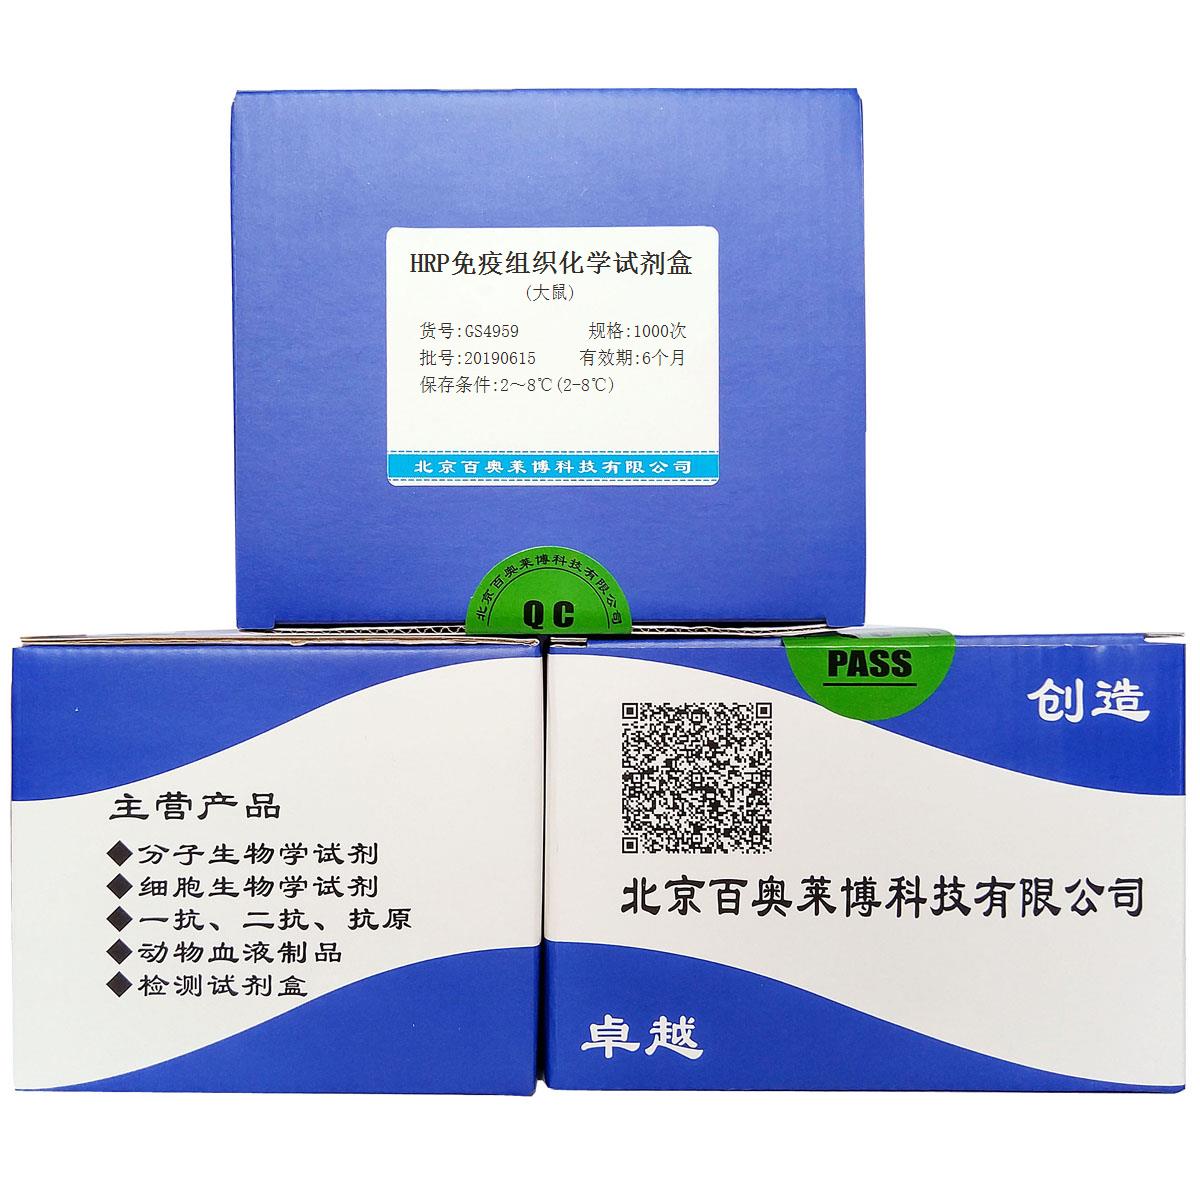 HRP免疫组织化学试剂盒(大鼠)北京供应商